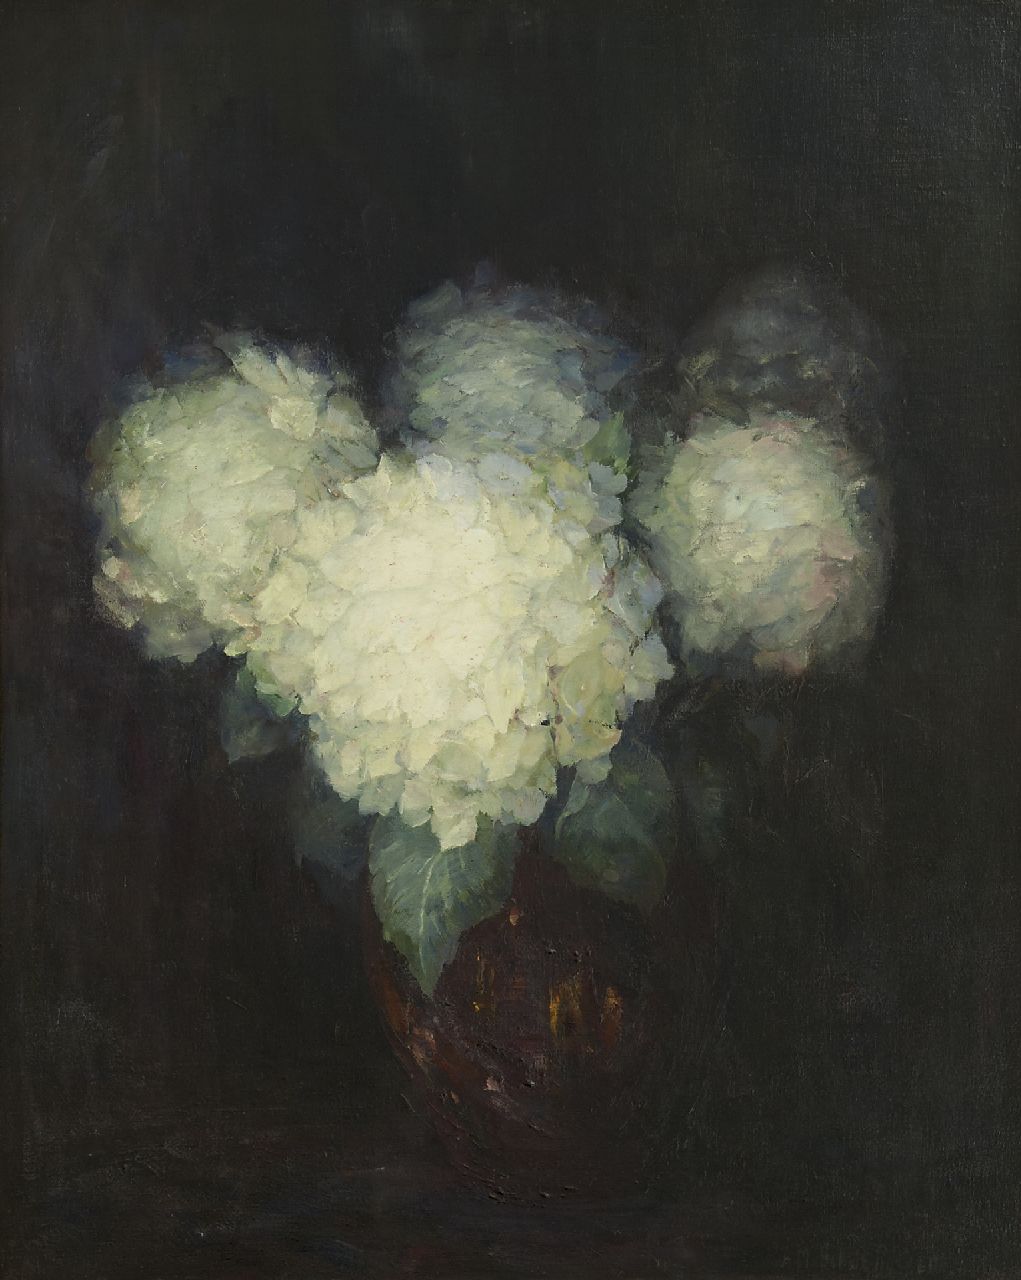 Russell van Schaik A.M.  | Adeline Maud Russell van Schaik, Vaas met hortensia's, olieverf op doek 99,6 x 80,2 cm, gesigneerd rechtsonder